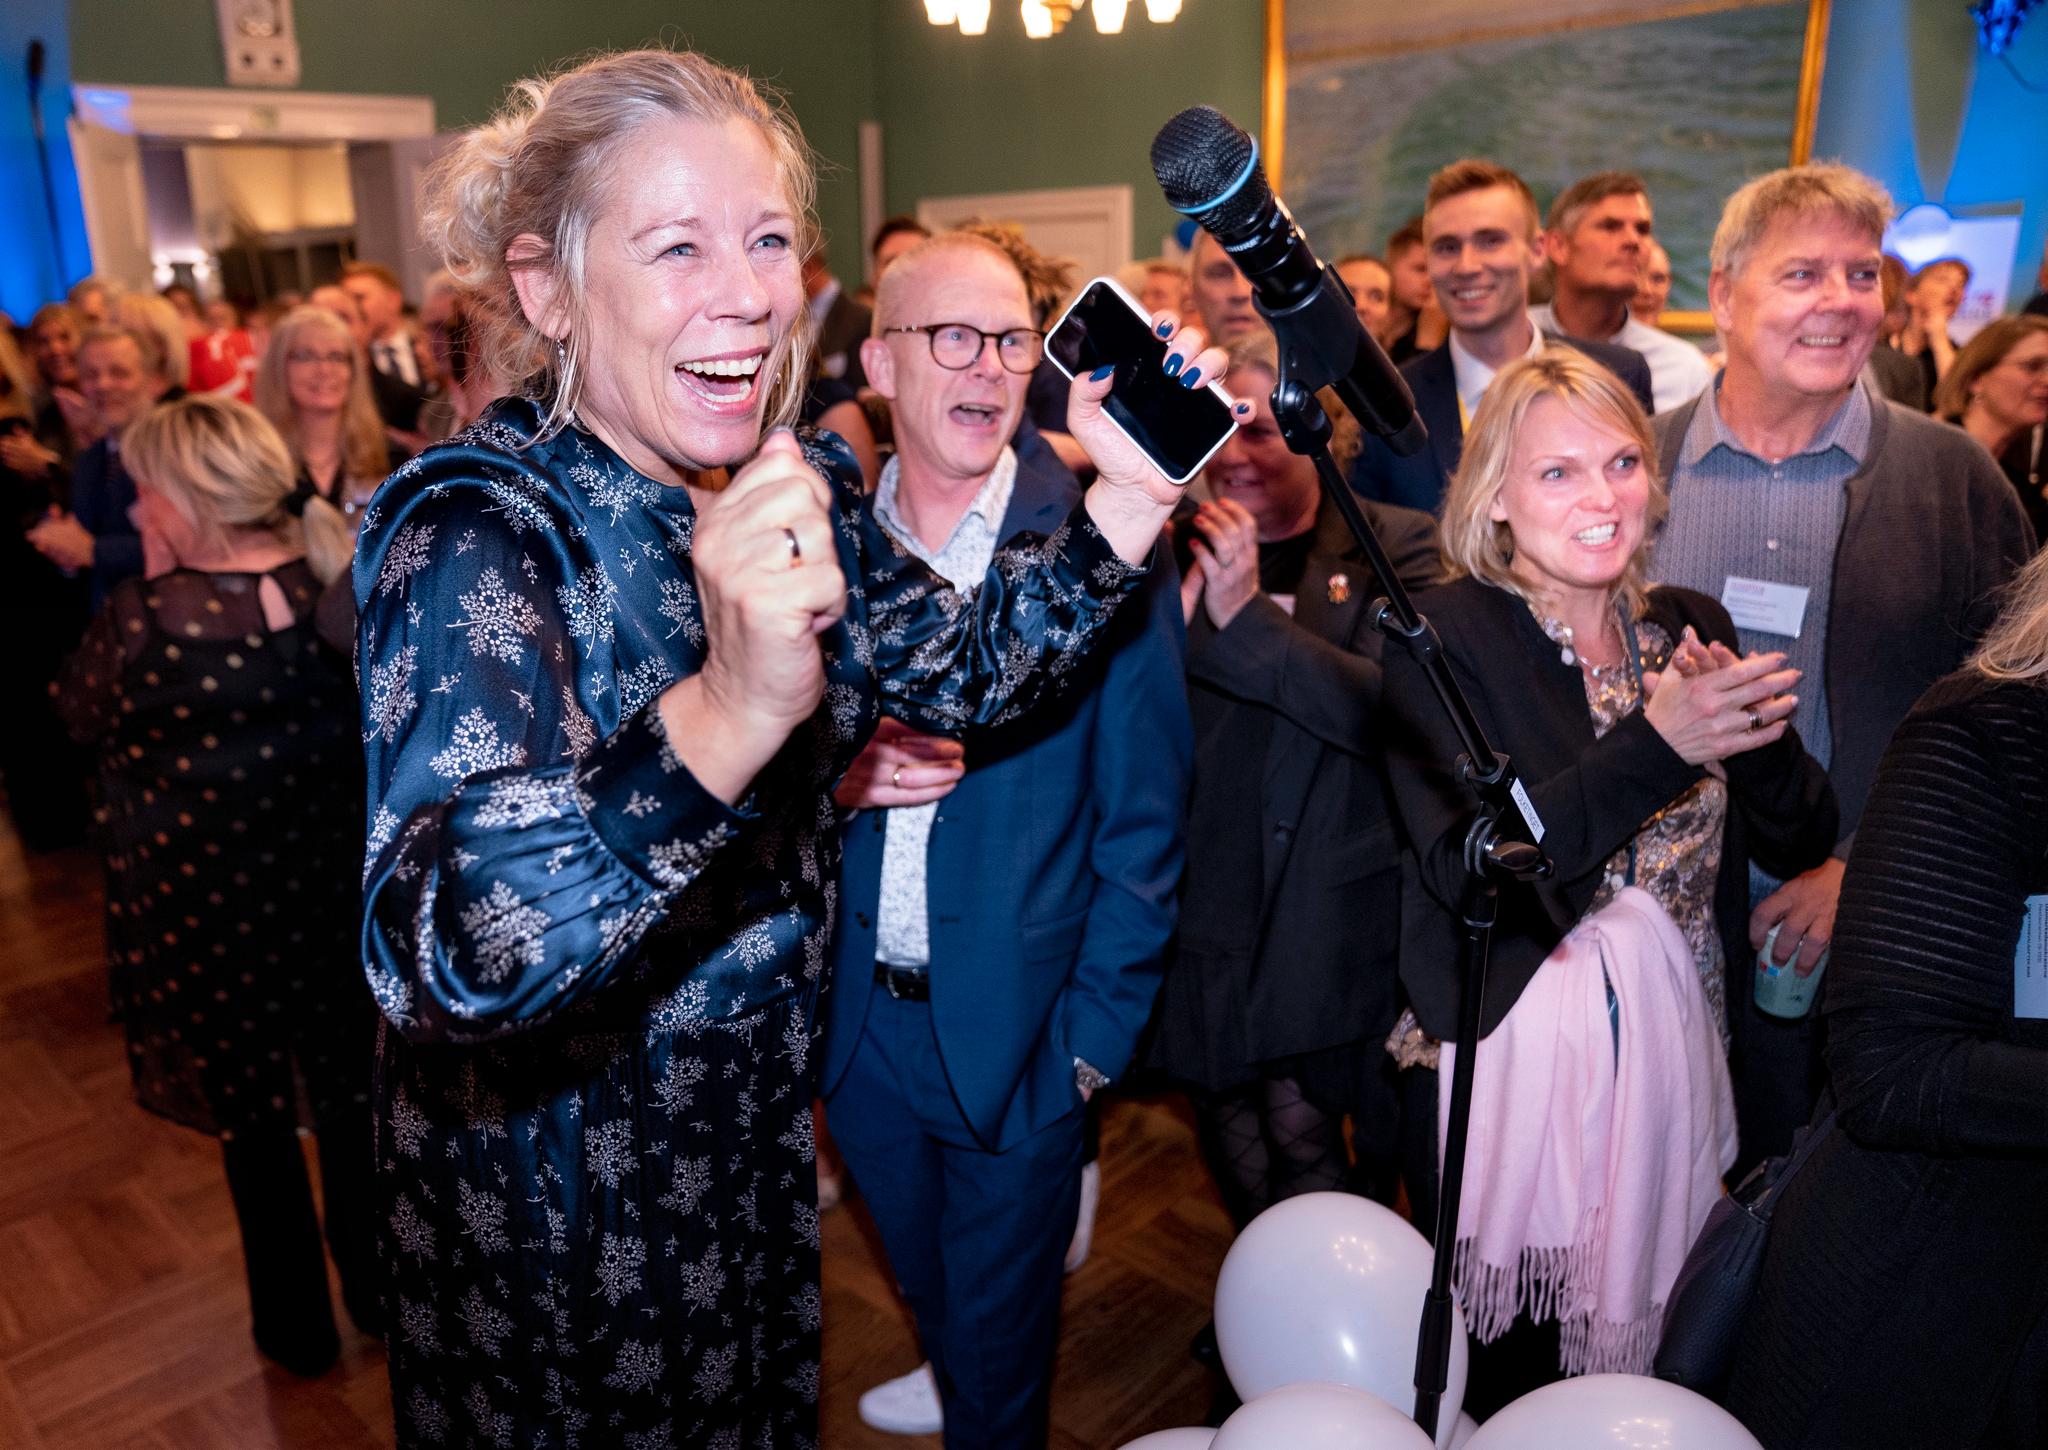 Høy stemningen på valgvaken til det nye partiet Danmarksdemokraterna, som er ledet av Inger Støjberg. Støjberg var tidligere innvandringsminister og ble dømt i riksrett i desember i fjor. 